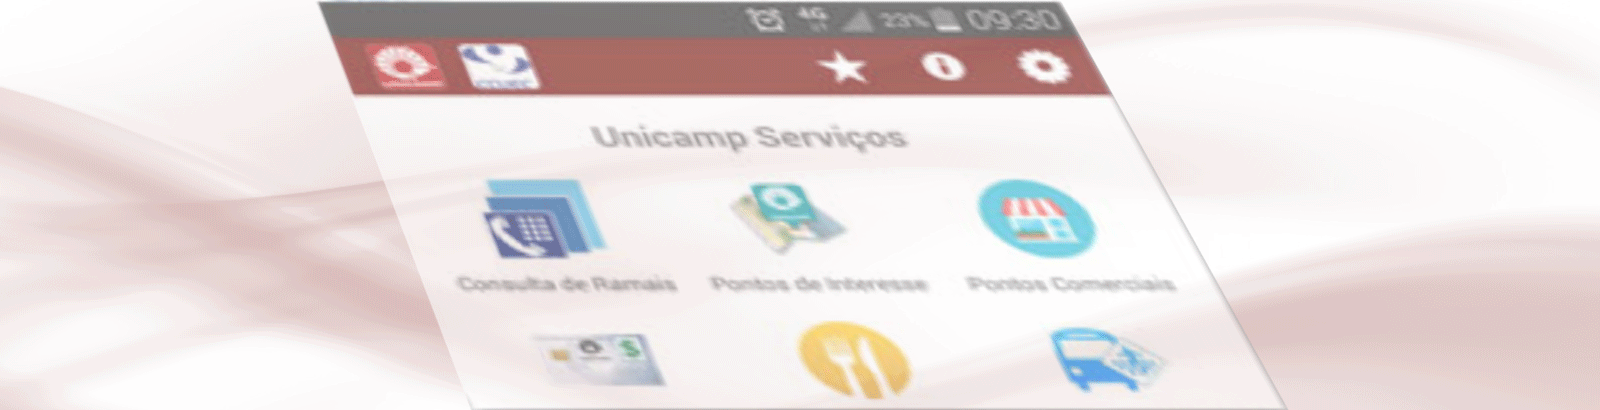 Alunos podem agora consultar suas notas usando o aplicativo Unicamp Serviços 